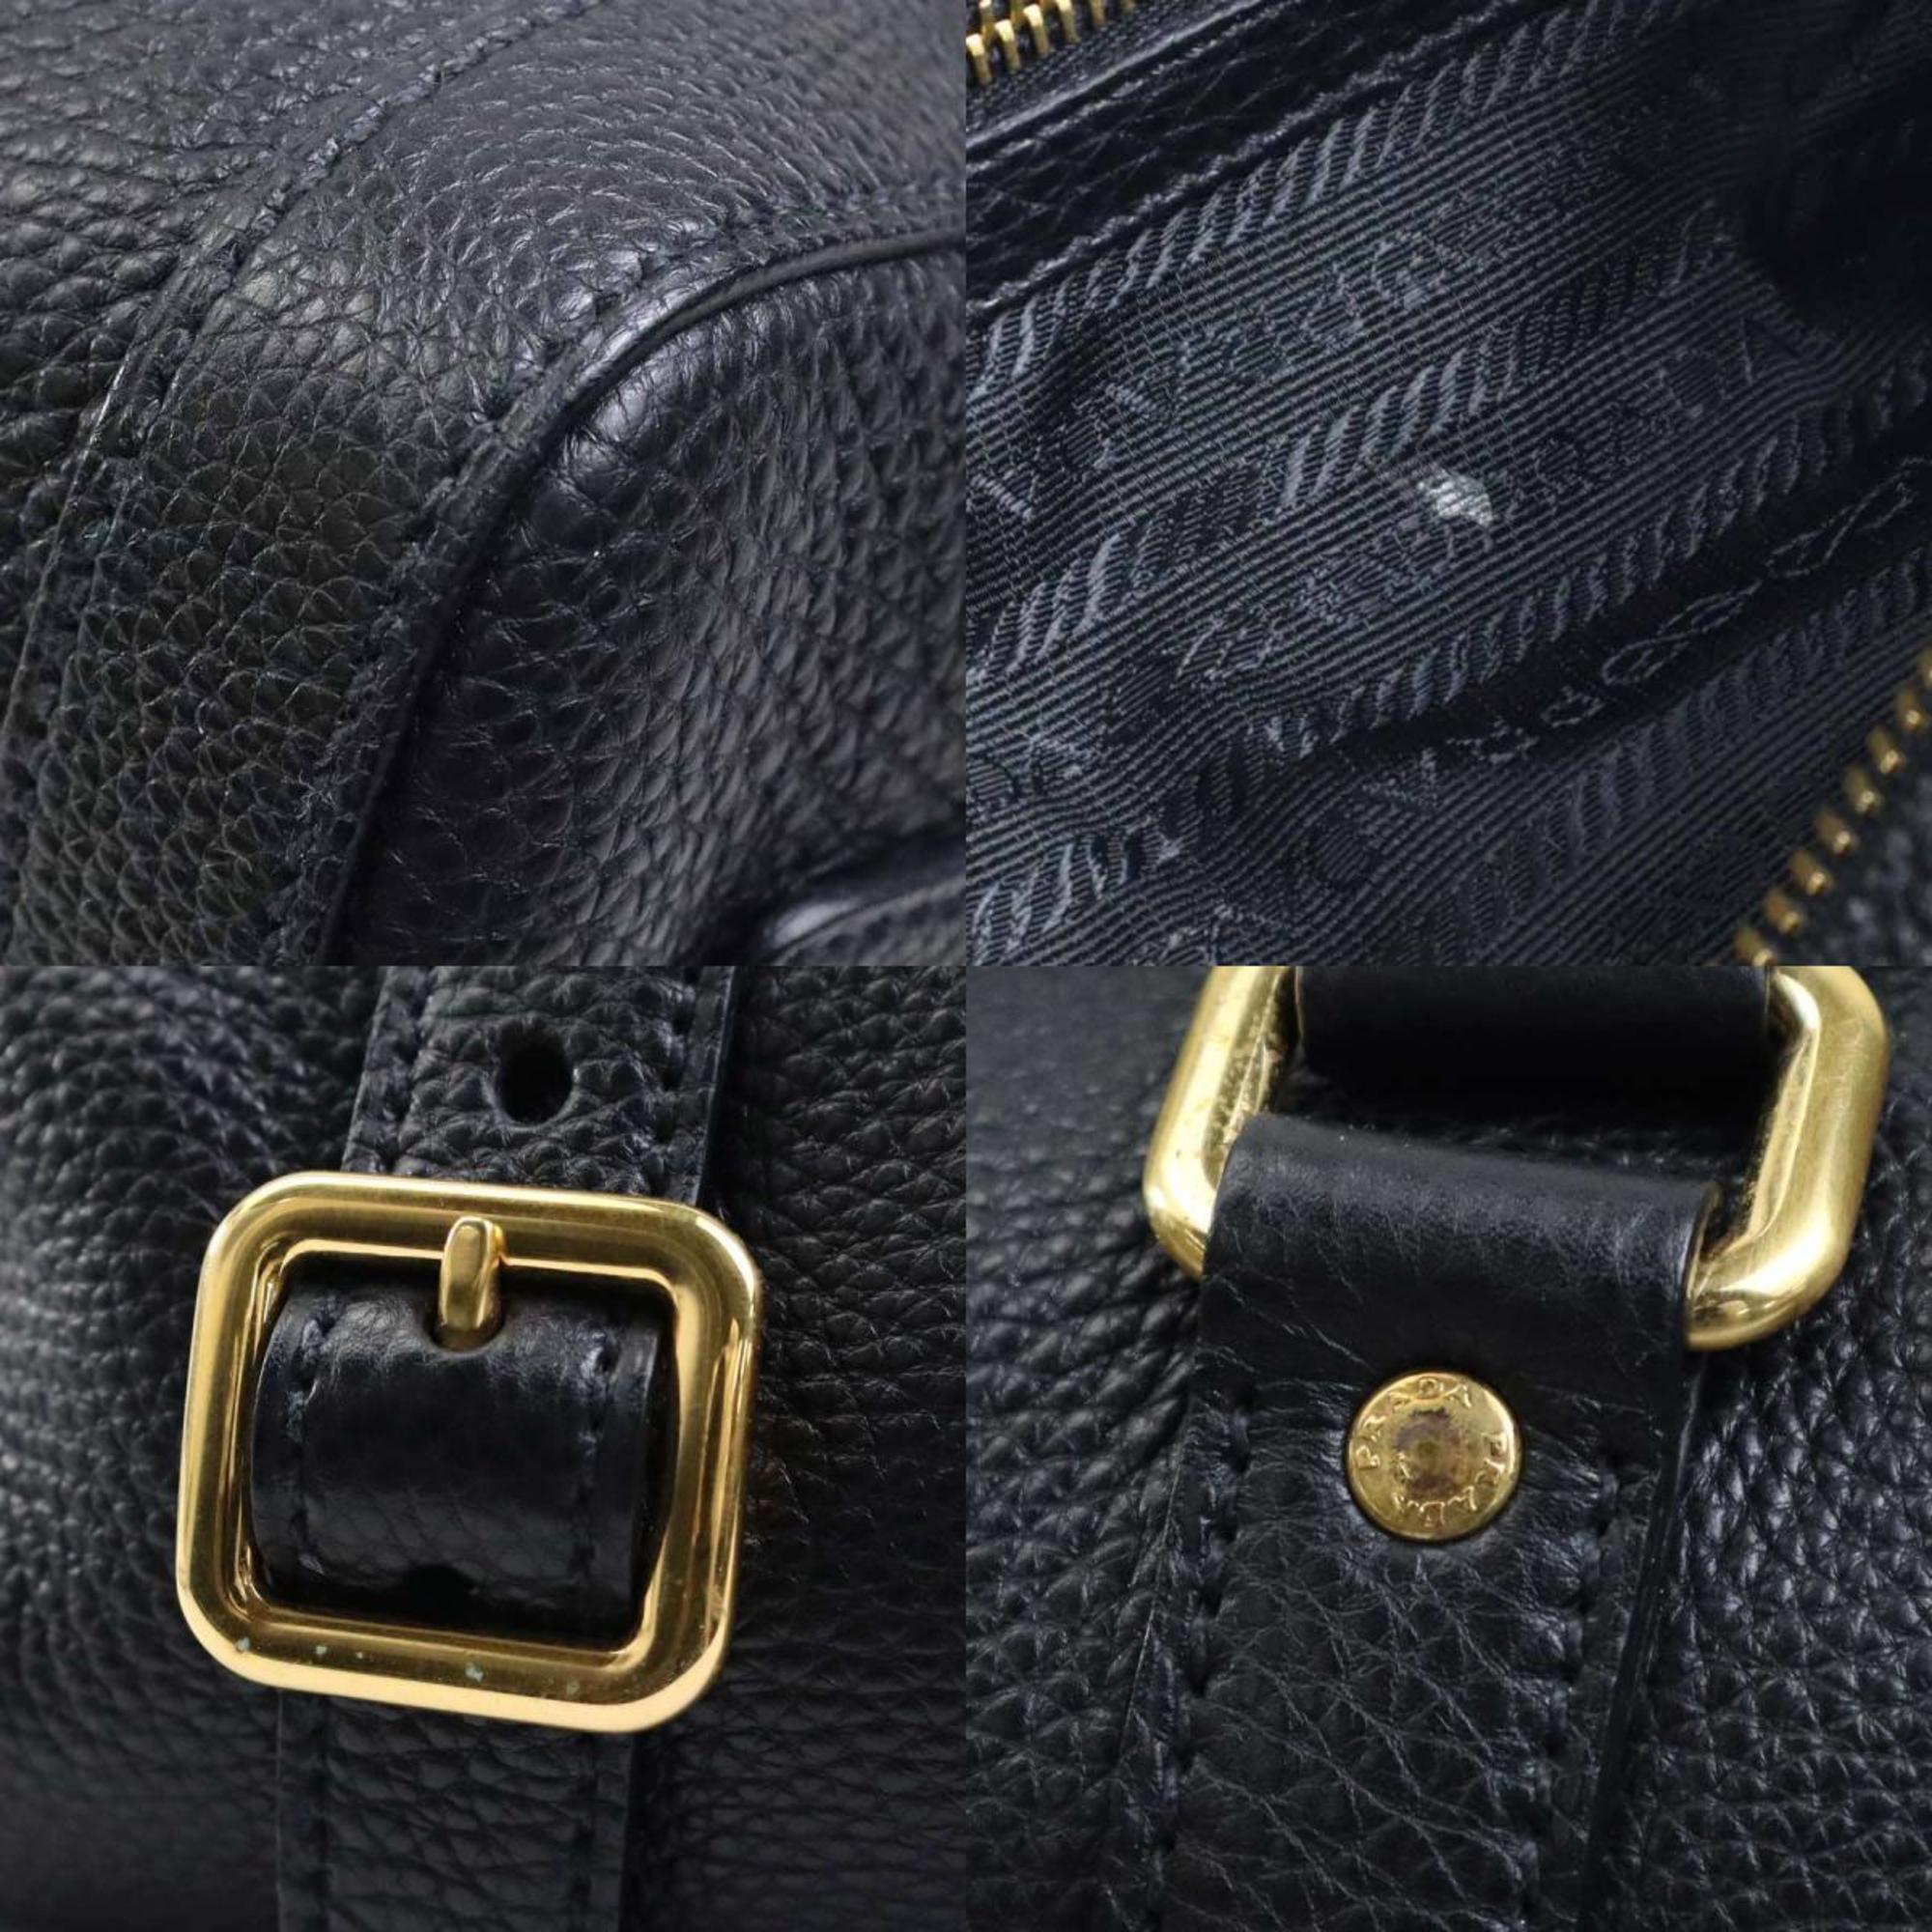 Prada PRADA shoulder bag leather black ladies